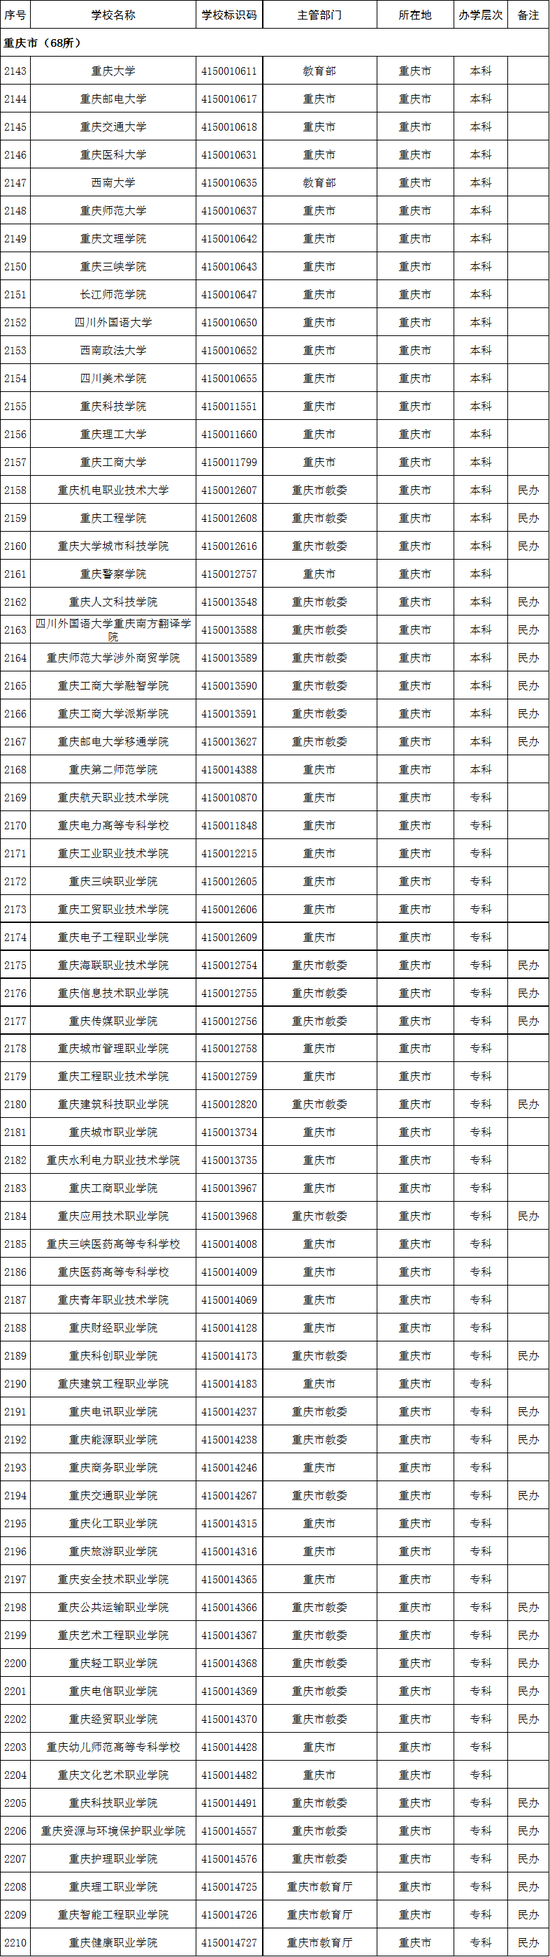 重庆市2020年高校名单(68所)